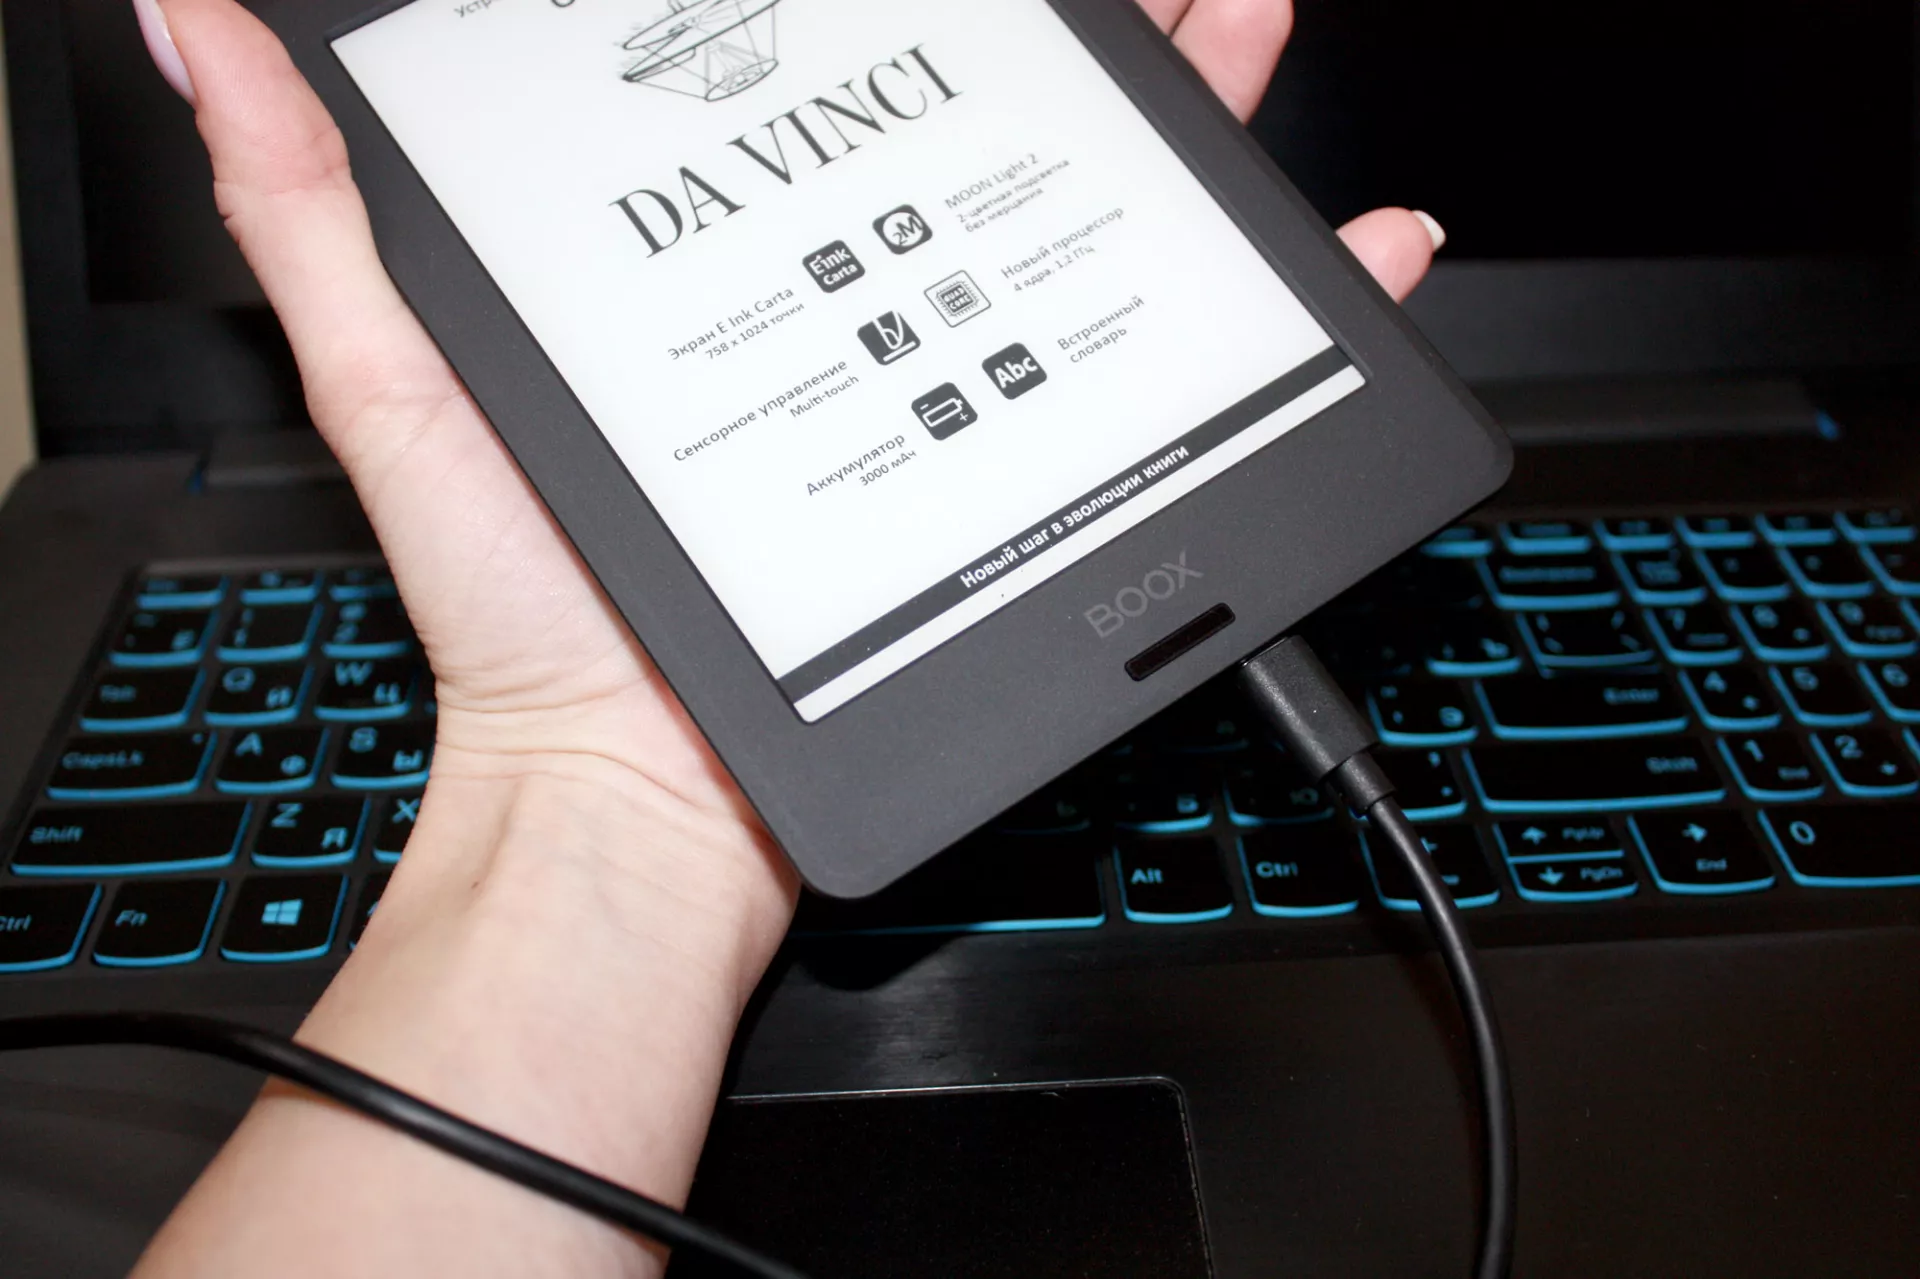 Обзор устройства для чтения электронных книг ONYX BOOX DA VINCI